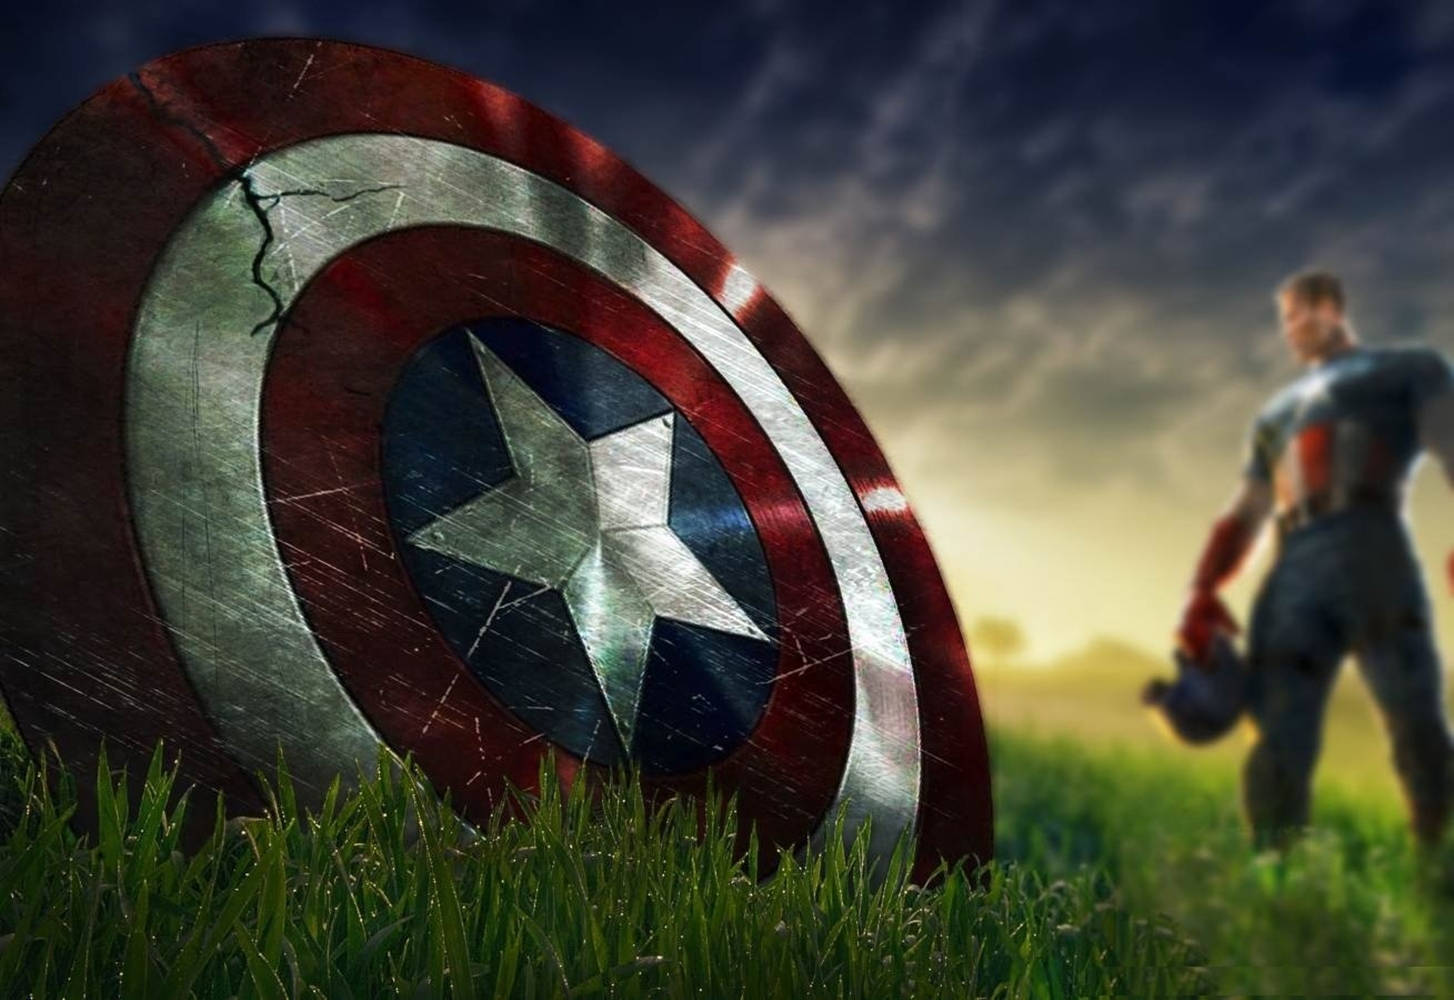 Avengers Captain America Shield Desktop Background